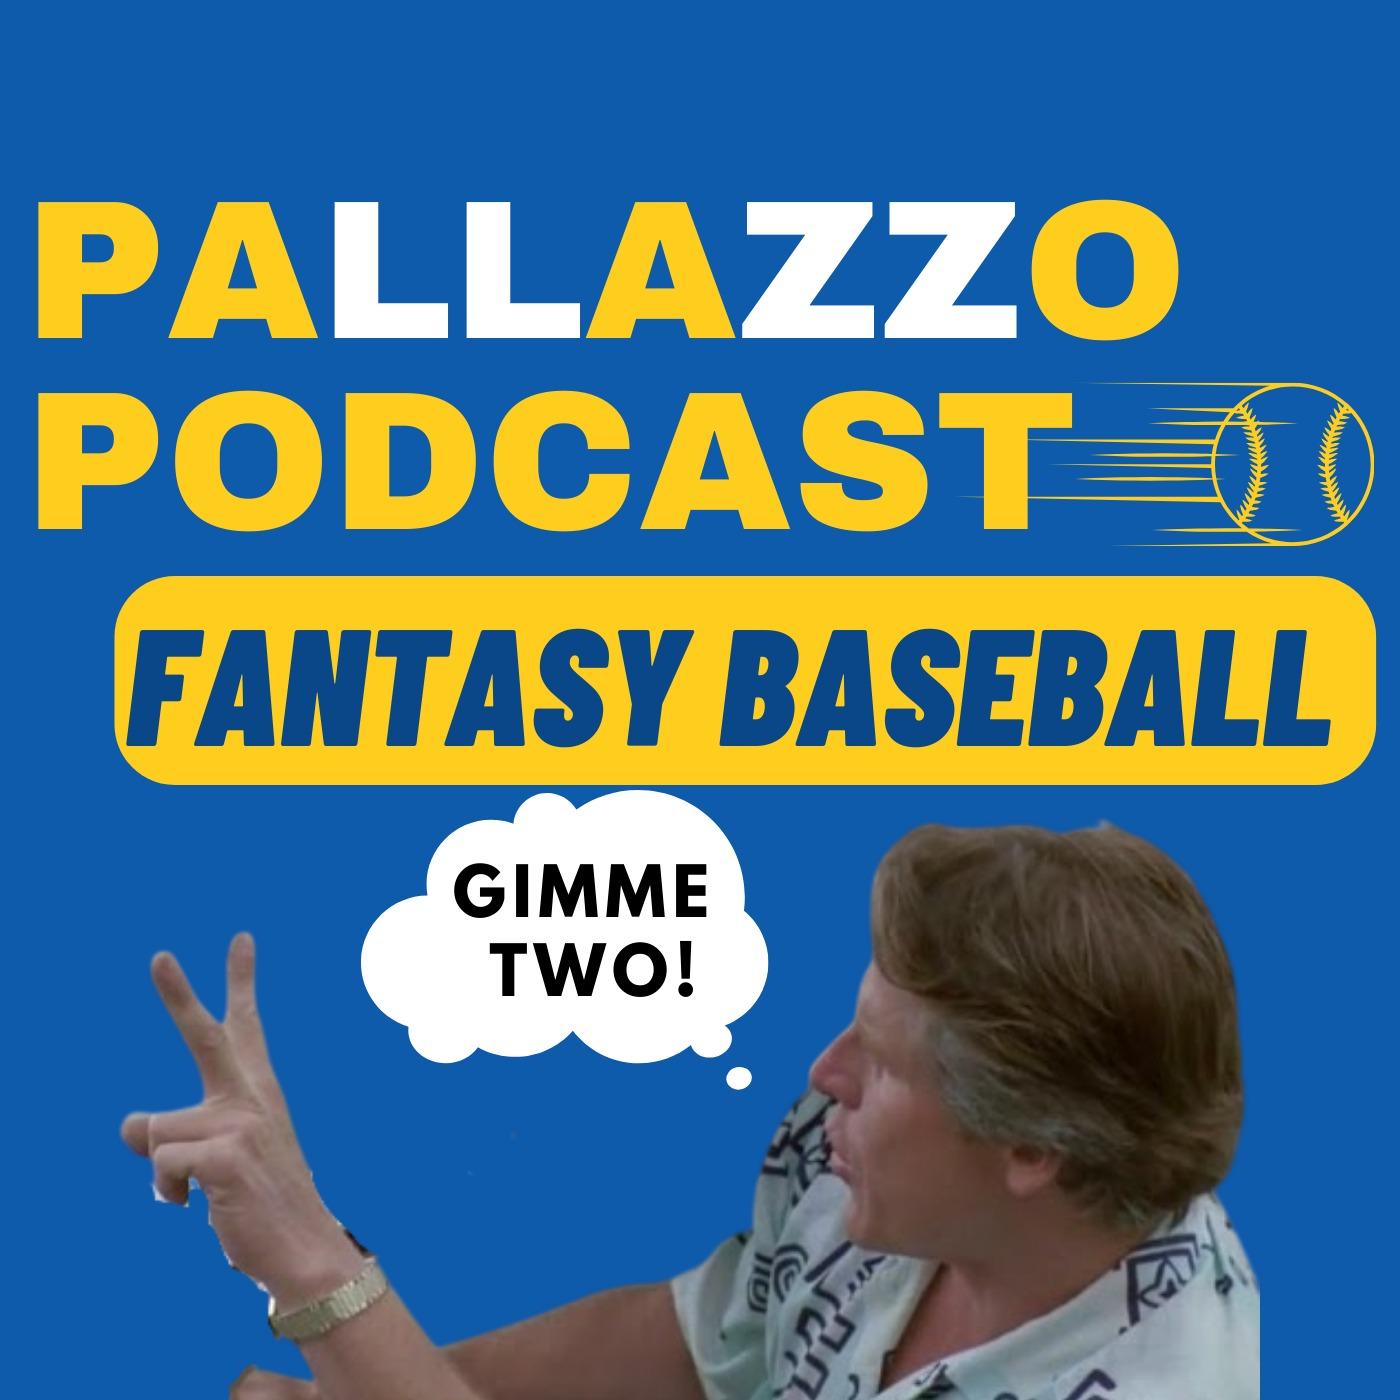 Pallazzo Podcast Fantasy Baseball